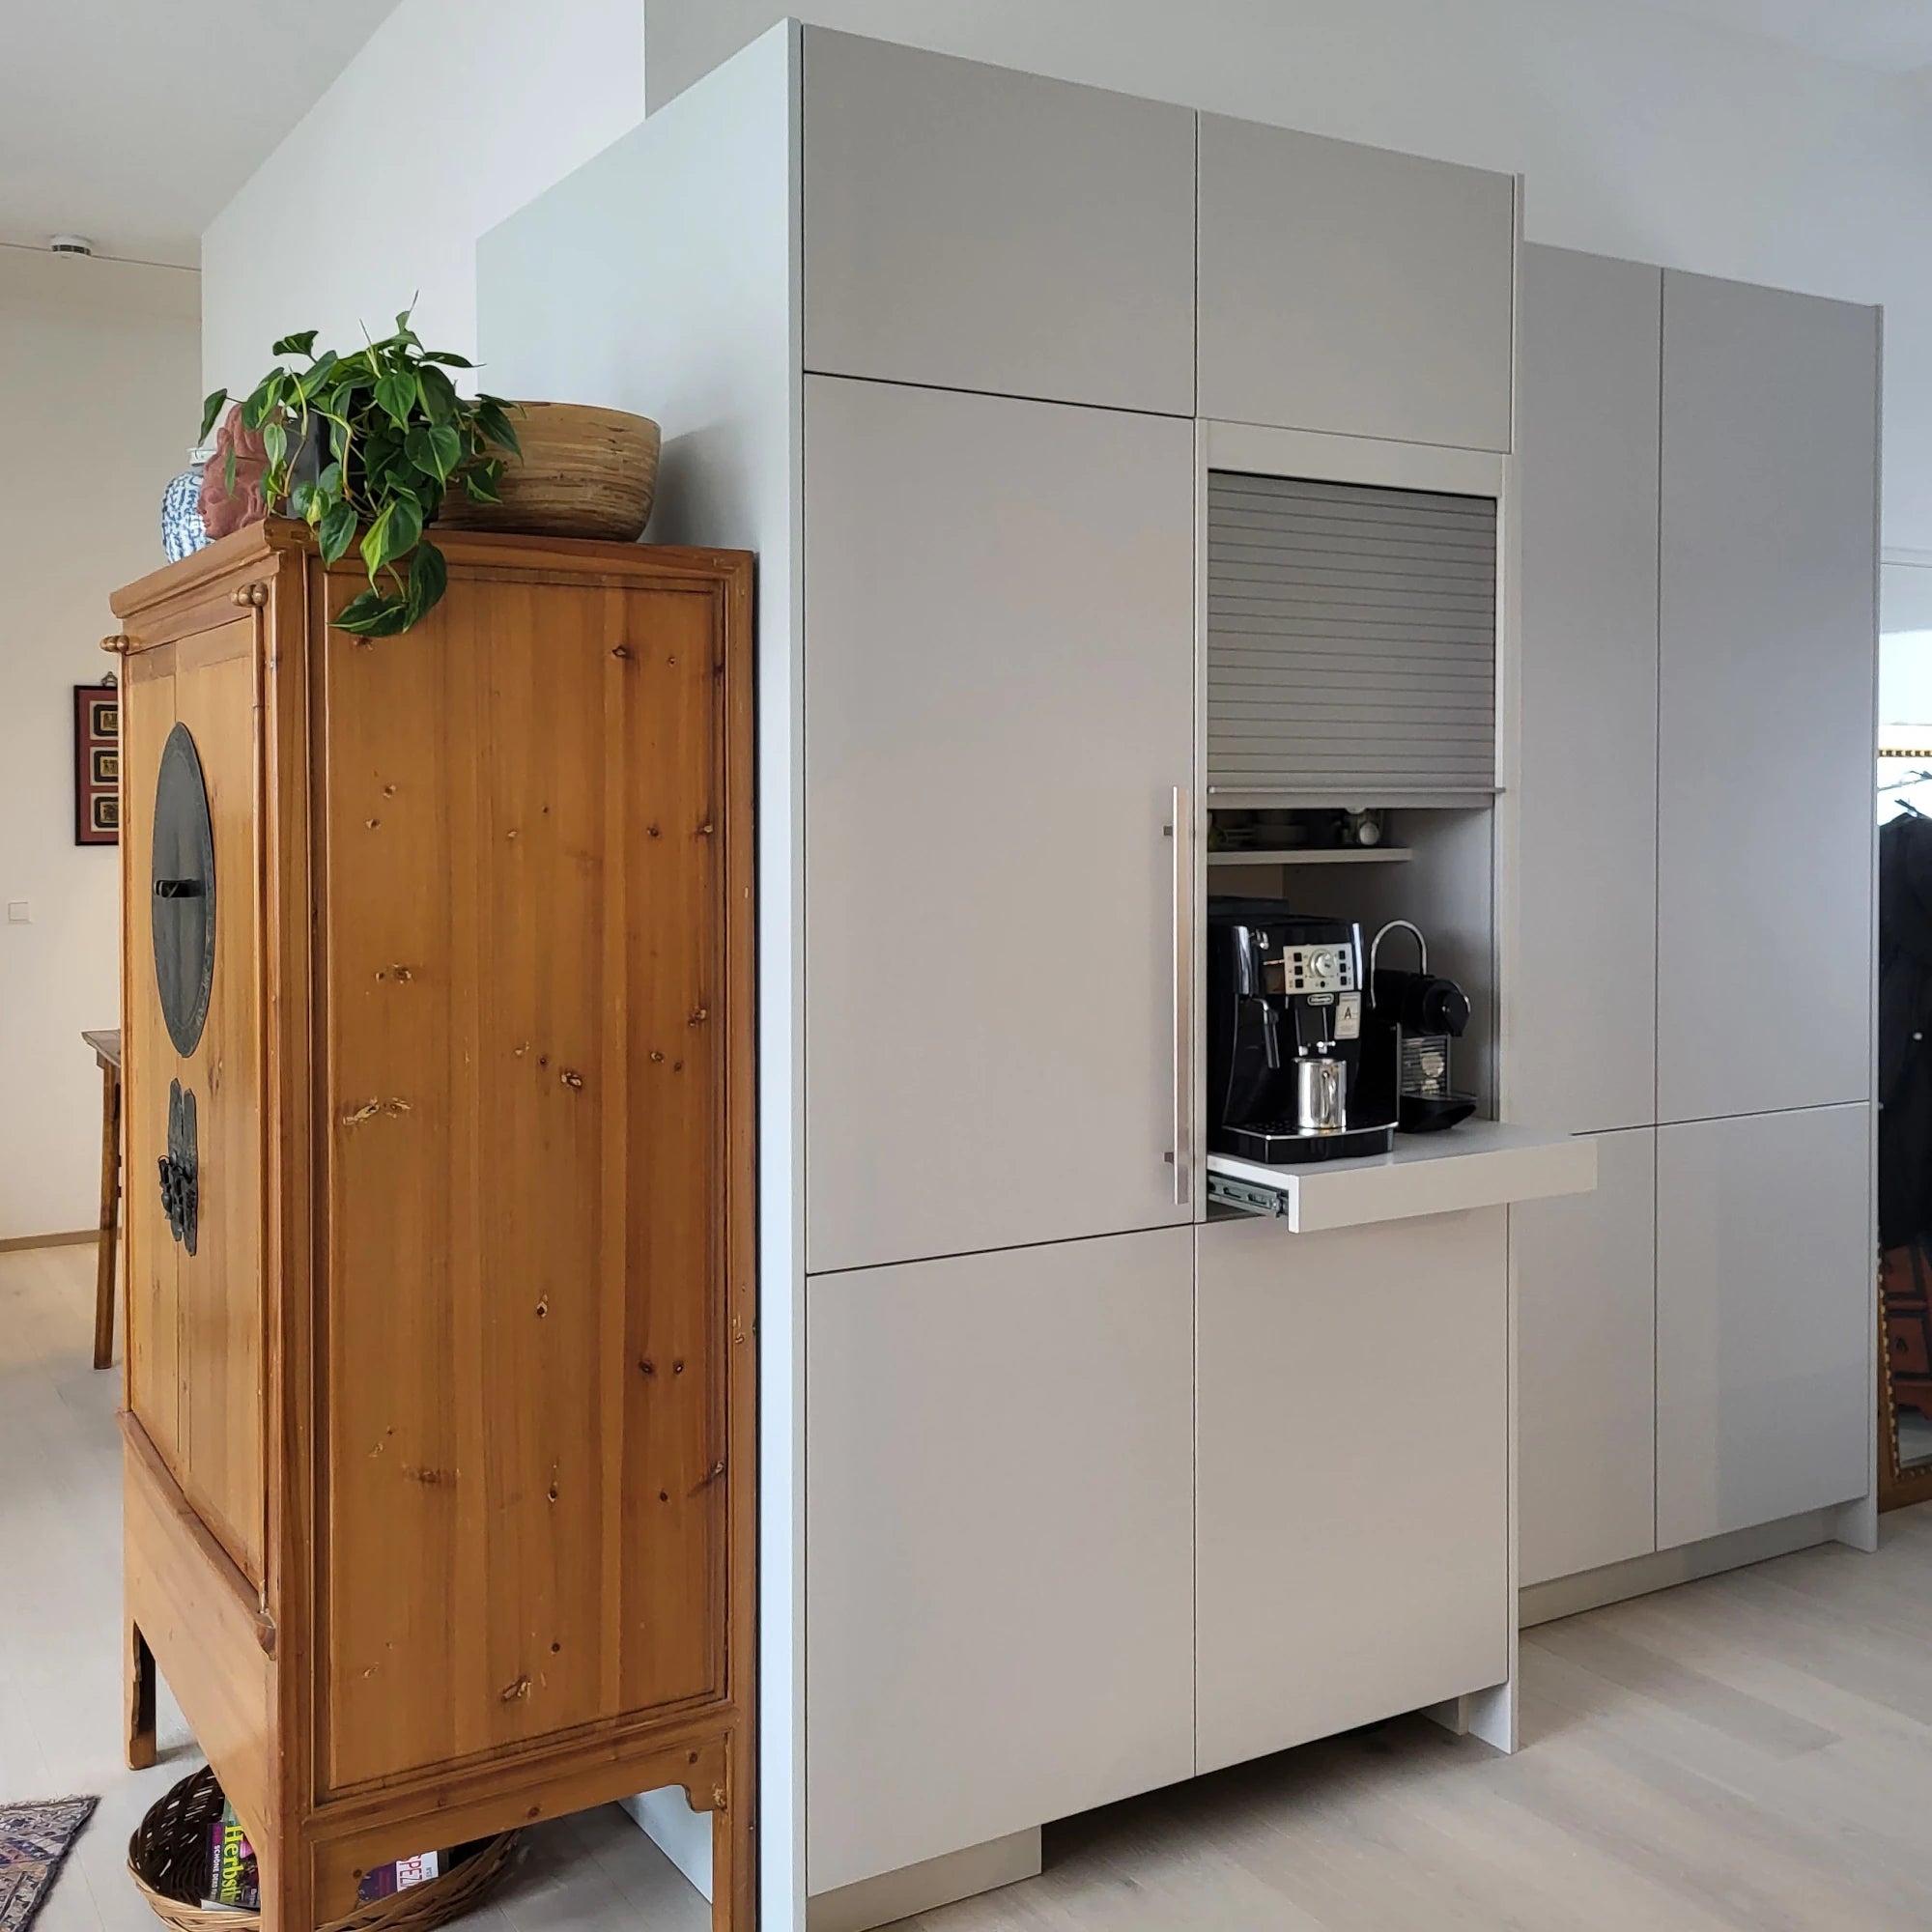 Küchen mit Massivholz - hochwertige und moderne Luxusküchen - Küchenplanung vom Innenarchitekt